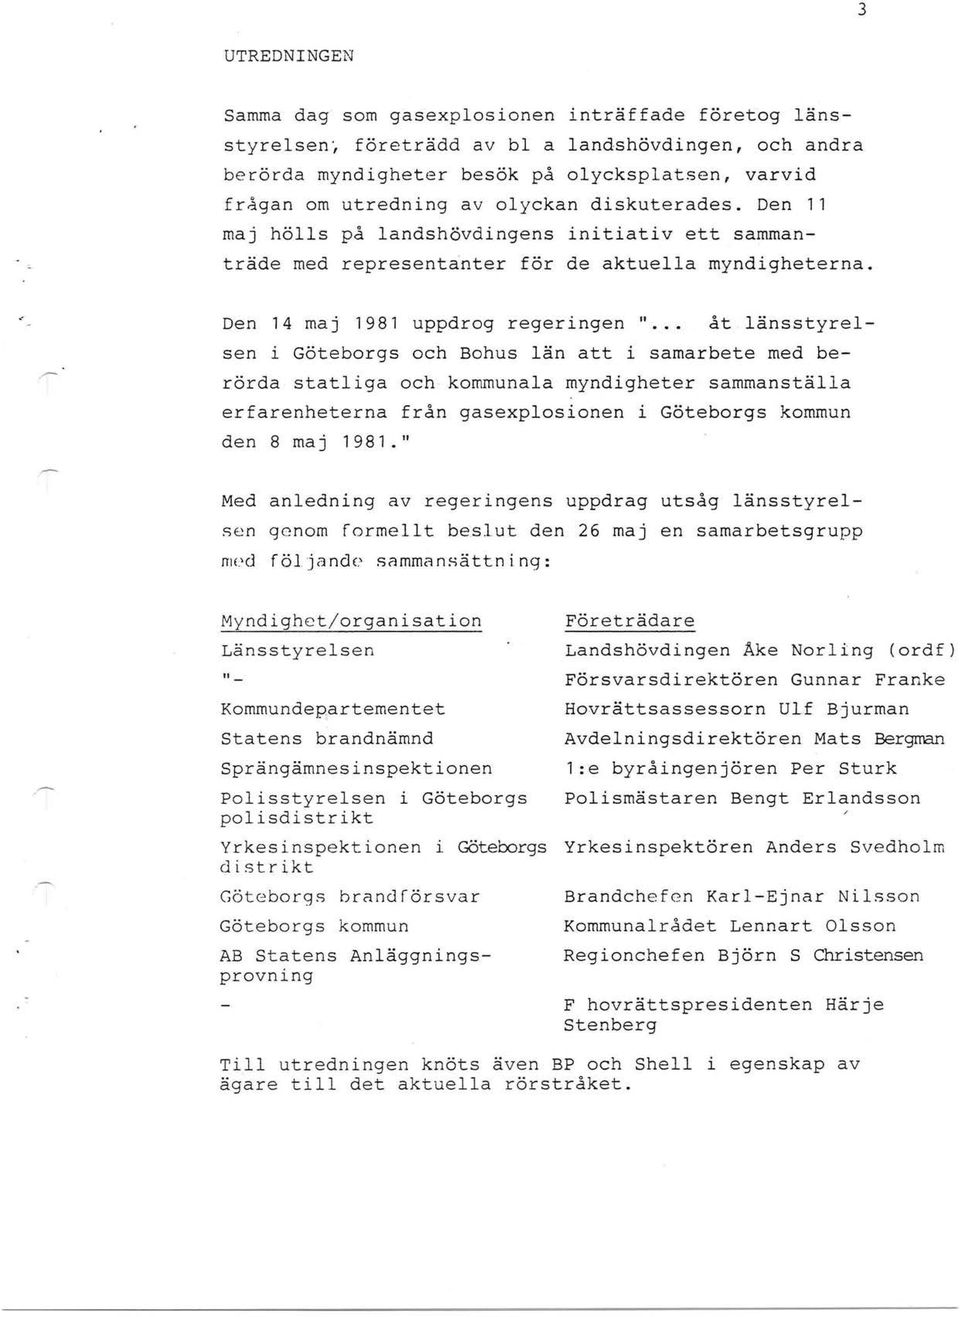 Den 14 maj 1981 uppdrog regeringen " åt änsstyresen i Göteborgs och Bohus än att i sarnarbete med berörda statiga och kommunaa myndigheter sammanstäa erfarenheterna från gasexposionen i Göteborgs